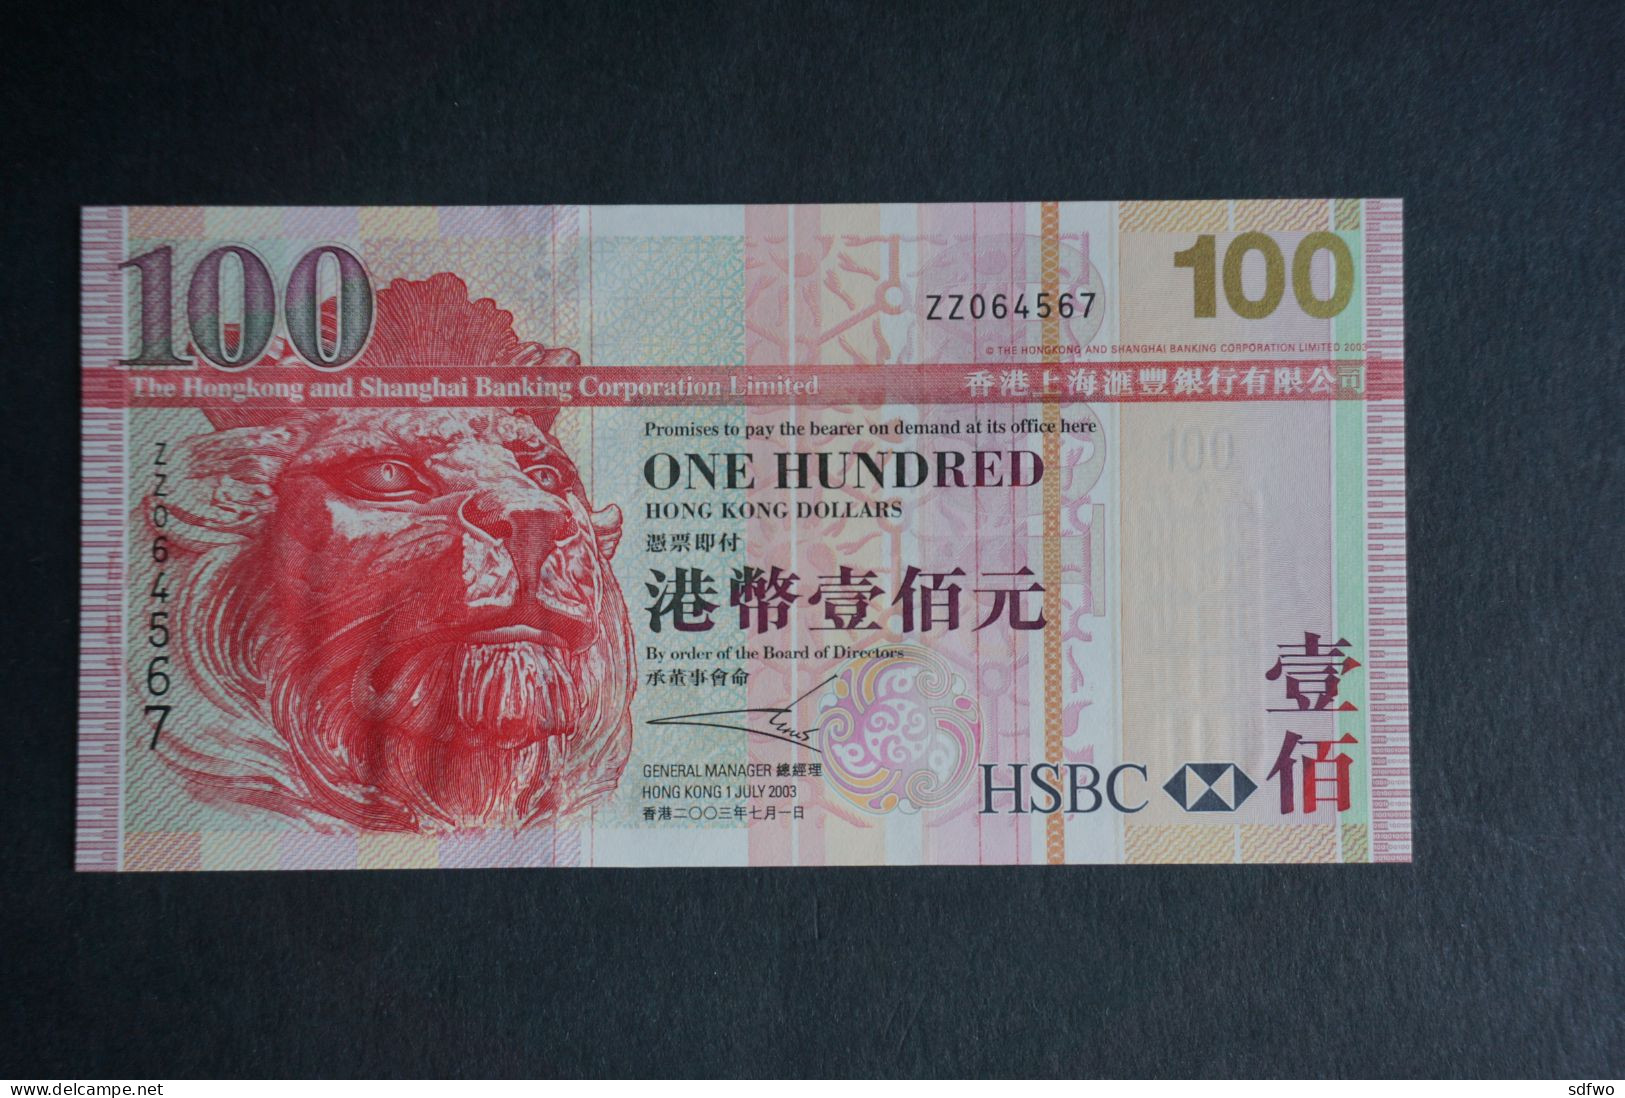 (M) 2003 HONG KONG HSBC 100 DOLLARS - REPLACEMENT ISSUE - Serial No. ZZ064567 (UNC) - Hongkong